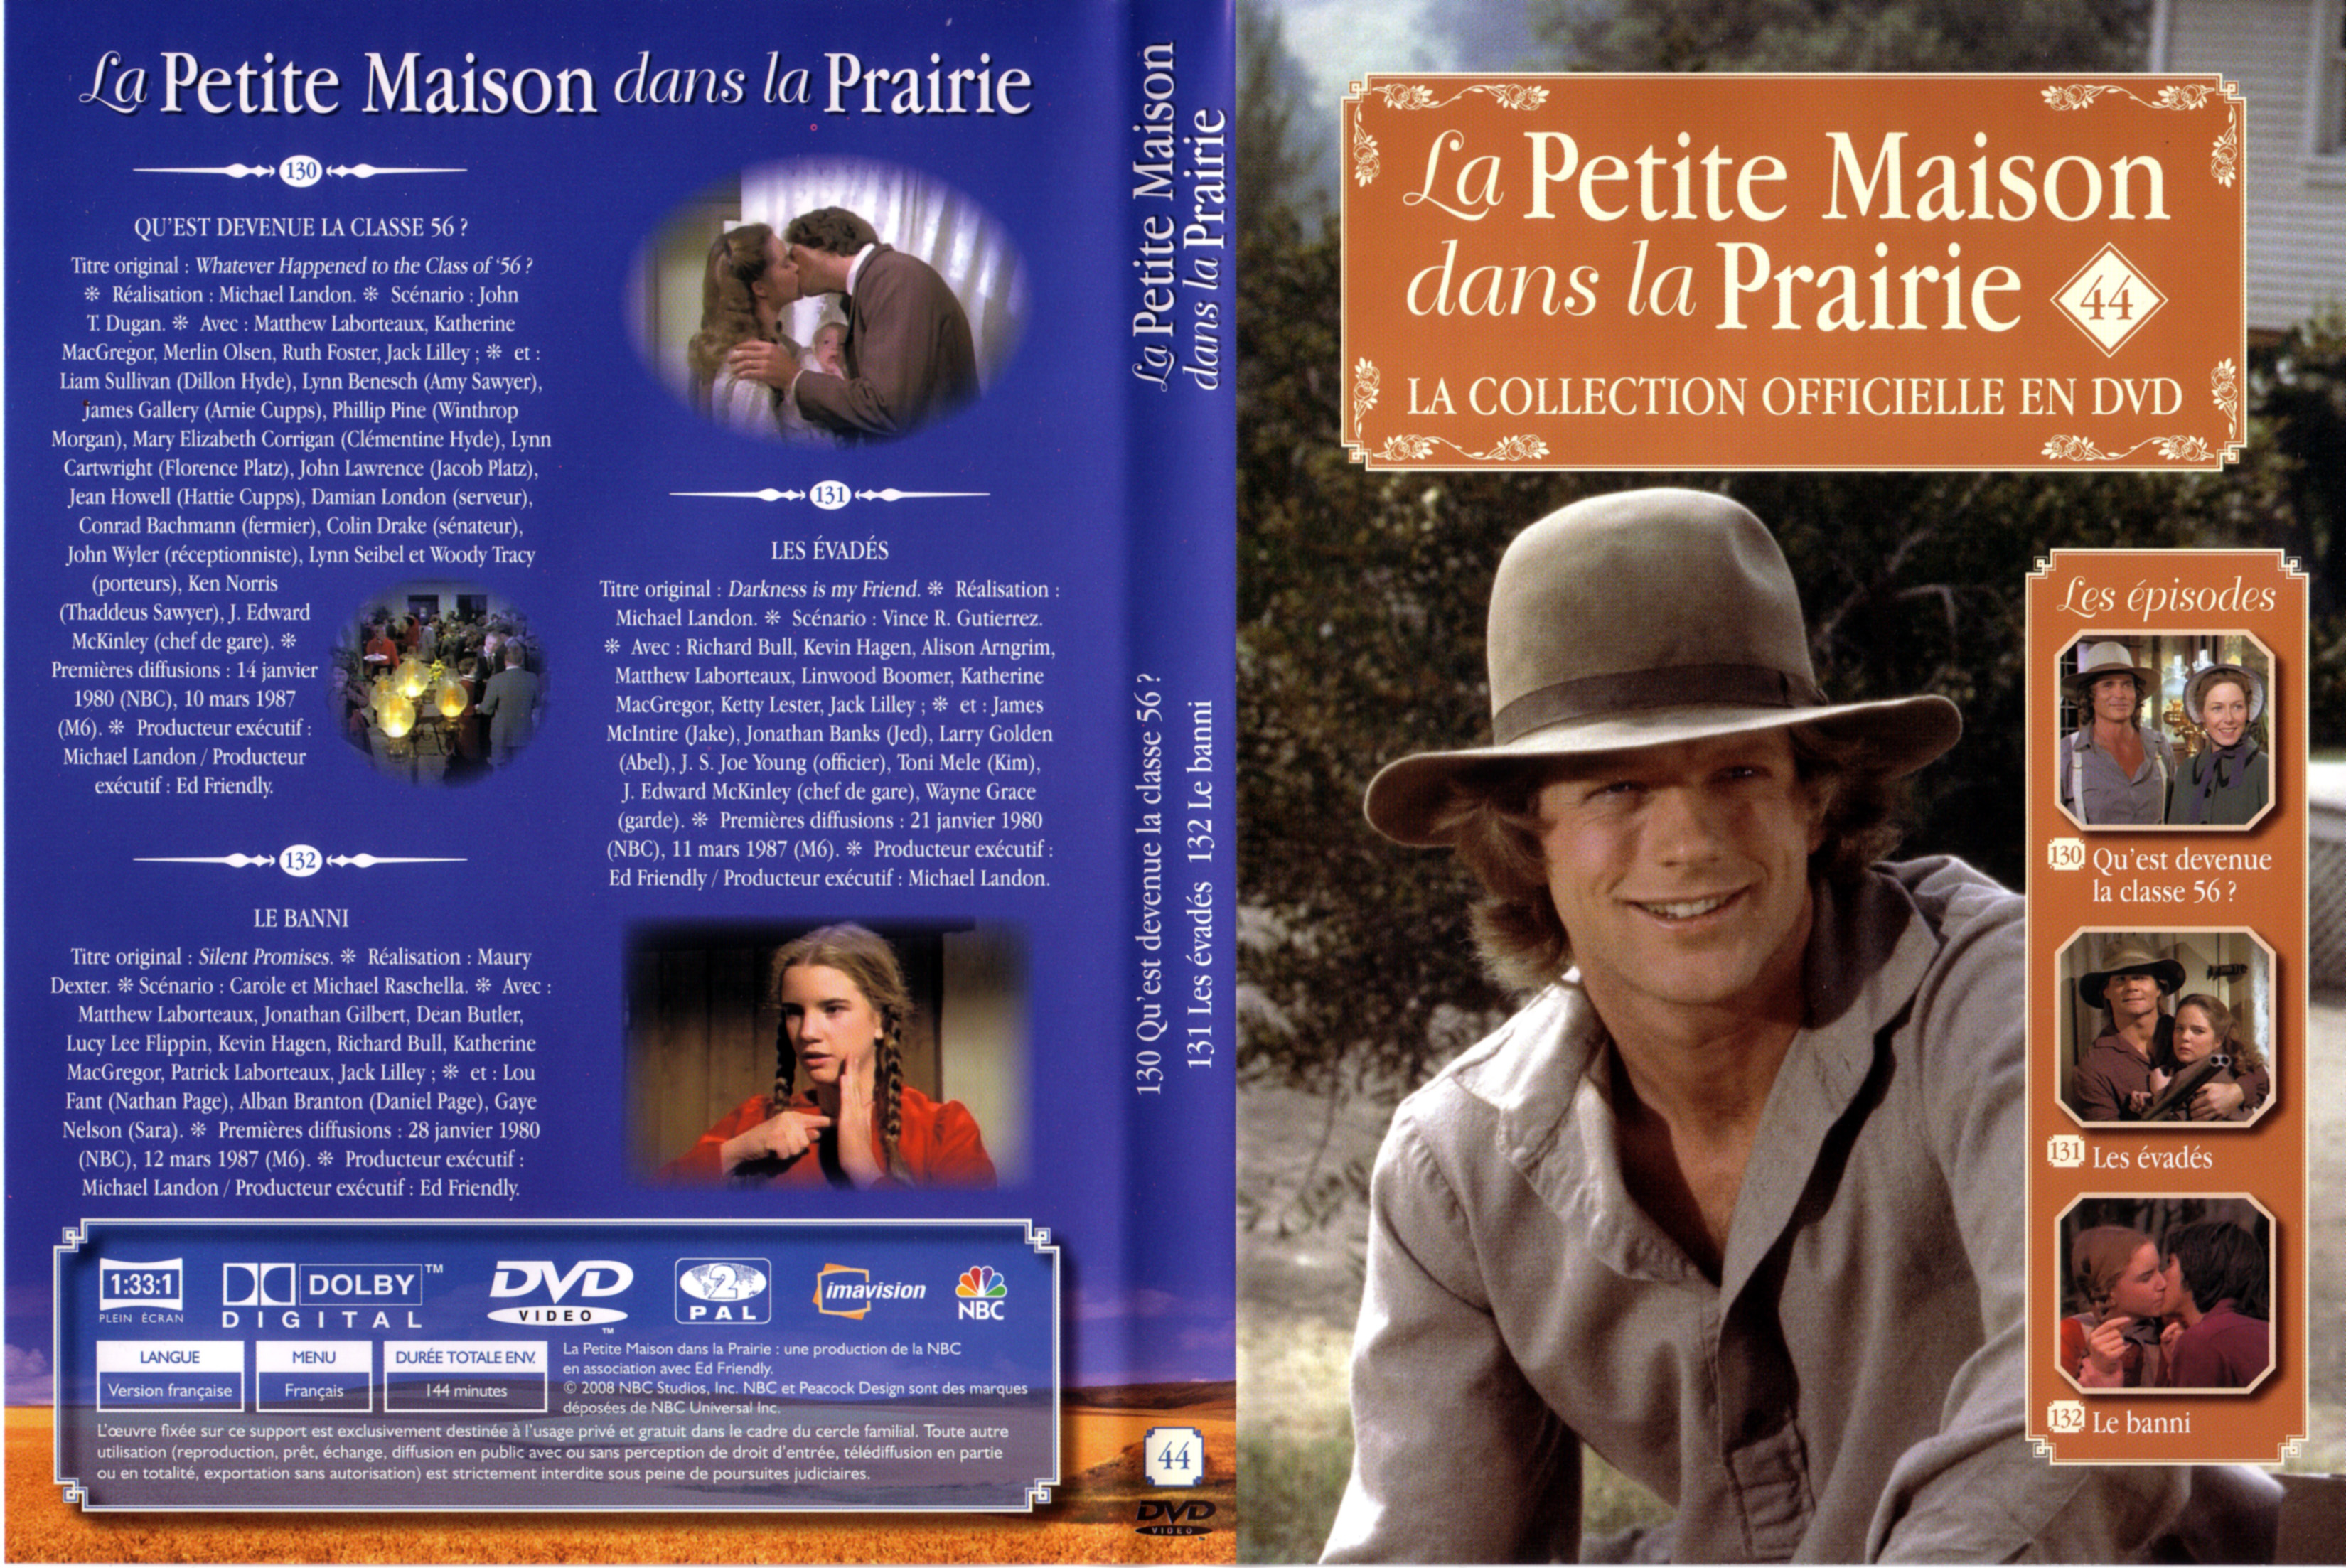 Jaquette DVD La petite maison dans la prairie La Collection vol 44